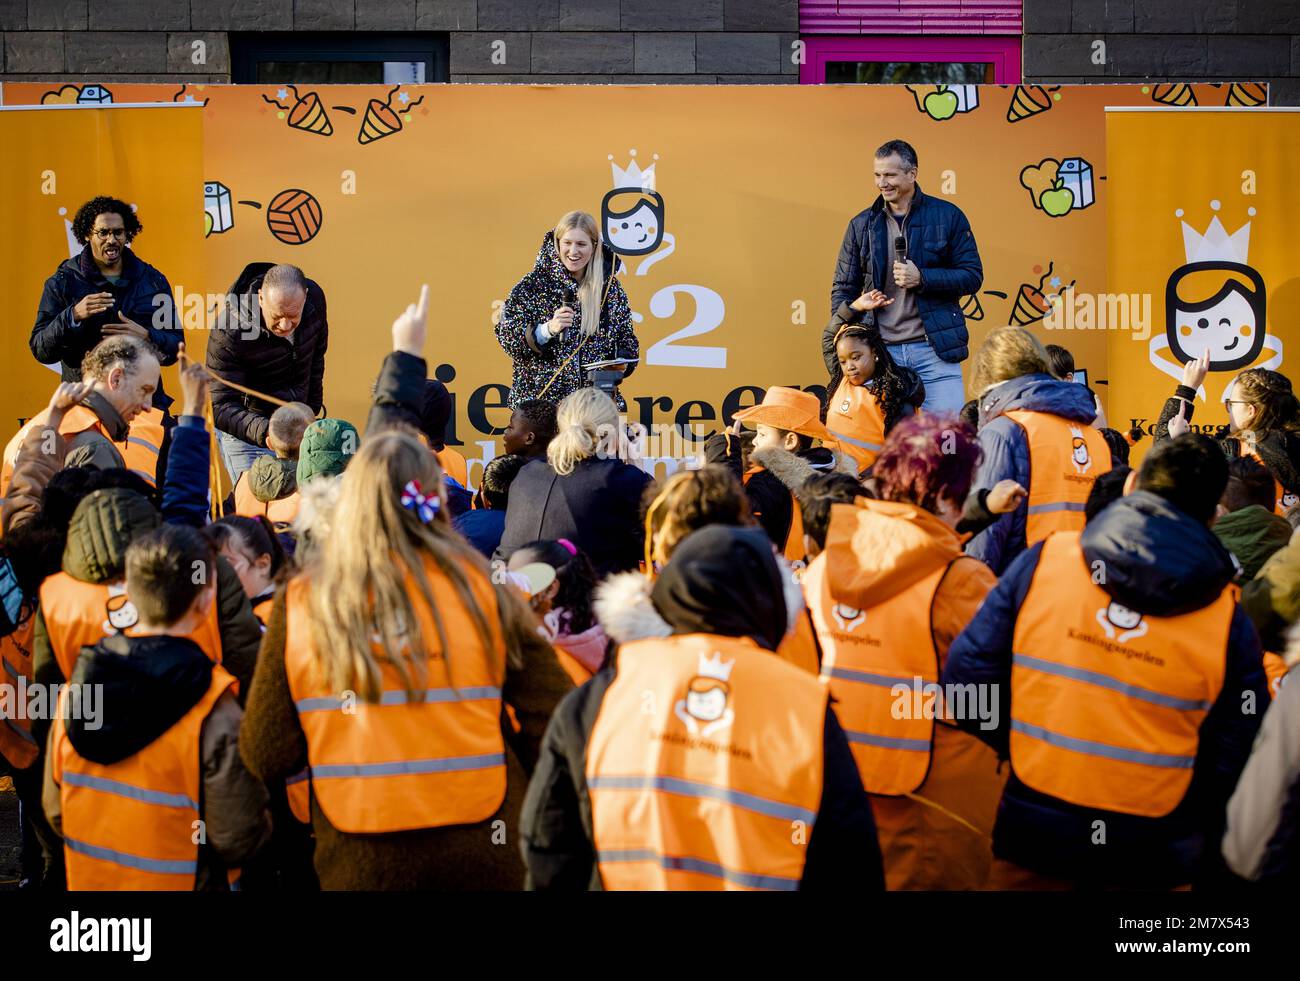 ALMERE - Ron Boszhard, Britt Dekker e iniziatore Richard Krajicek durante il segnale di partenza per le iscrizioni per le scuole per l'undicesima edizione dei Giochi del Re. I giochi sono stati concepiti nel 2013 poco prima dell'adesione al trono di re Willem-Alexander, per coinvolgere i giovani più giovani in quell'occasione e per attirare l'attenzione sul movimento, lo sport e i giochi. ANP SEM VAN DER WAL olanda fuori - belgio fuori Foto Stock